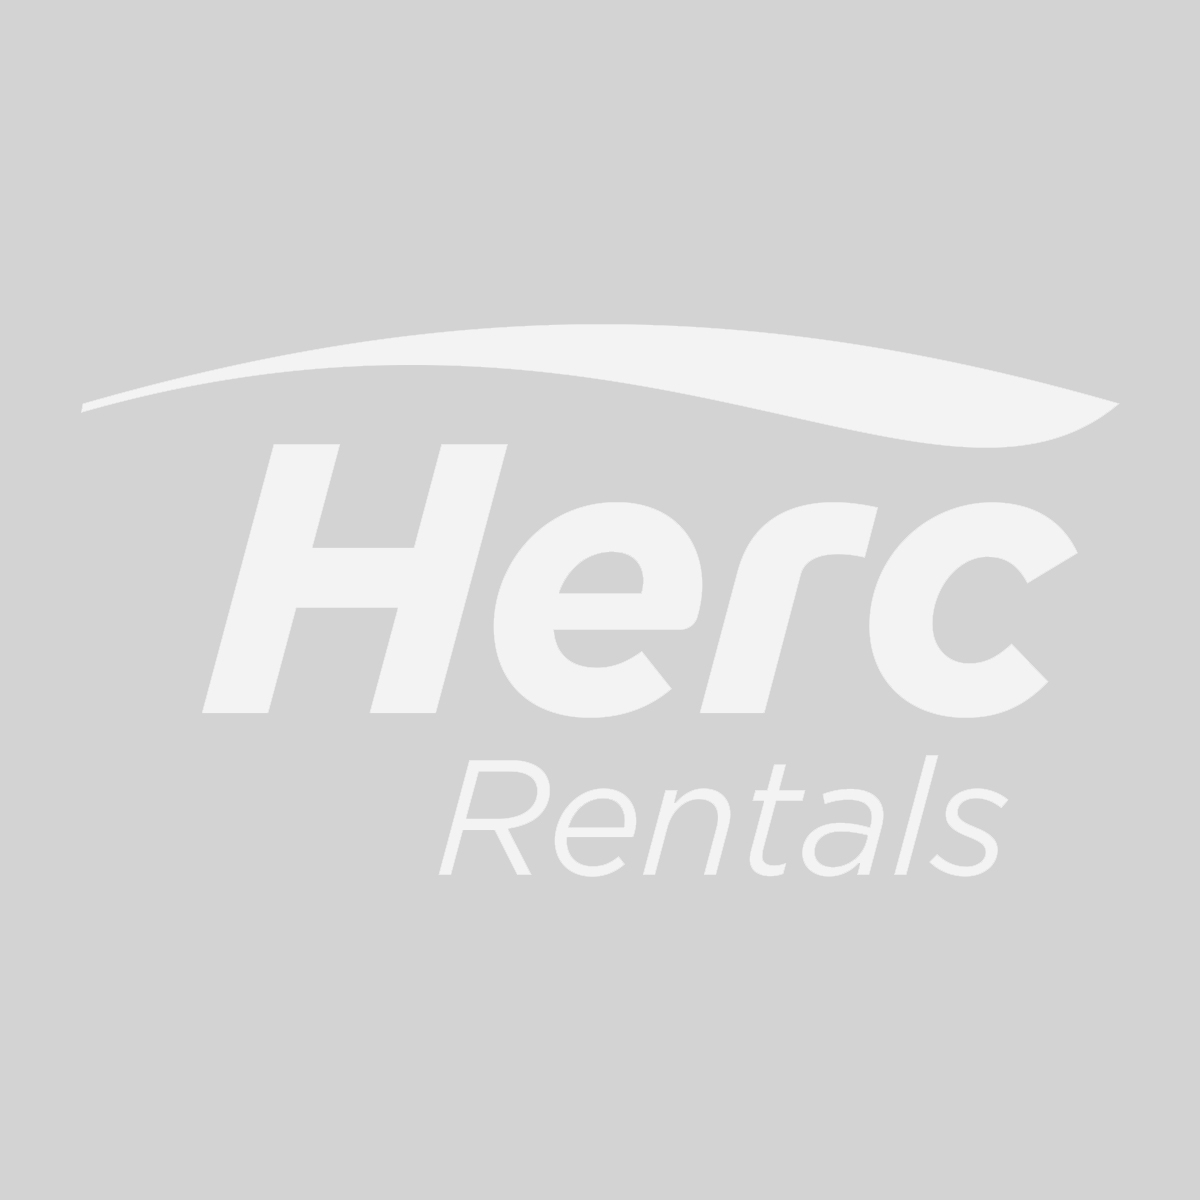 herc-rentals-logo-og